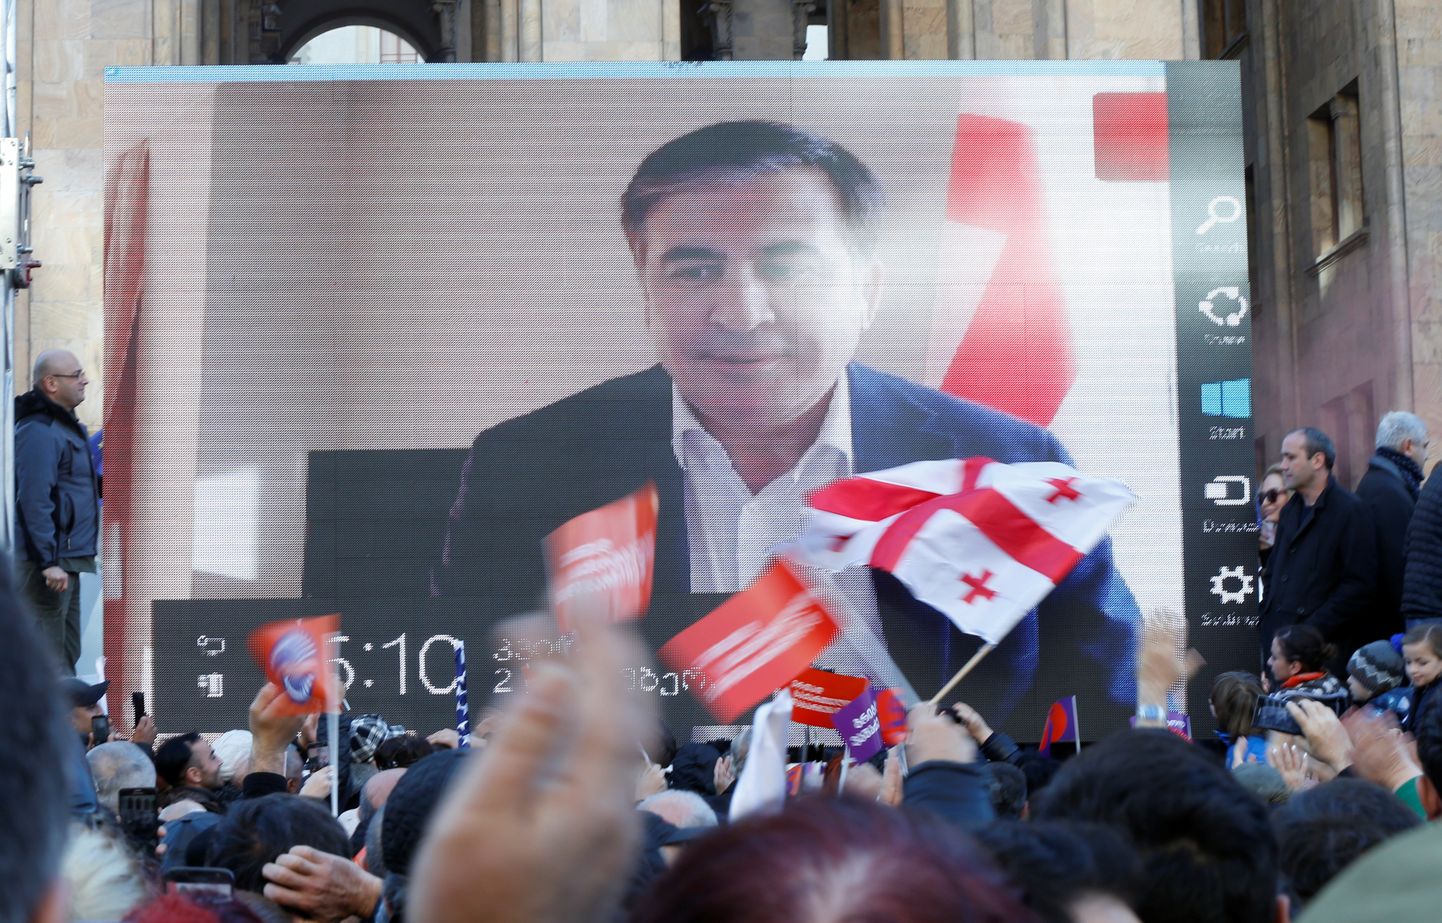 Gruusia endine president Mihheil Saakašvili videovahendusel toetajaskonna poole pöördumas.